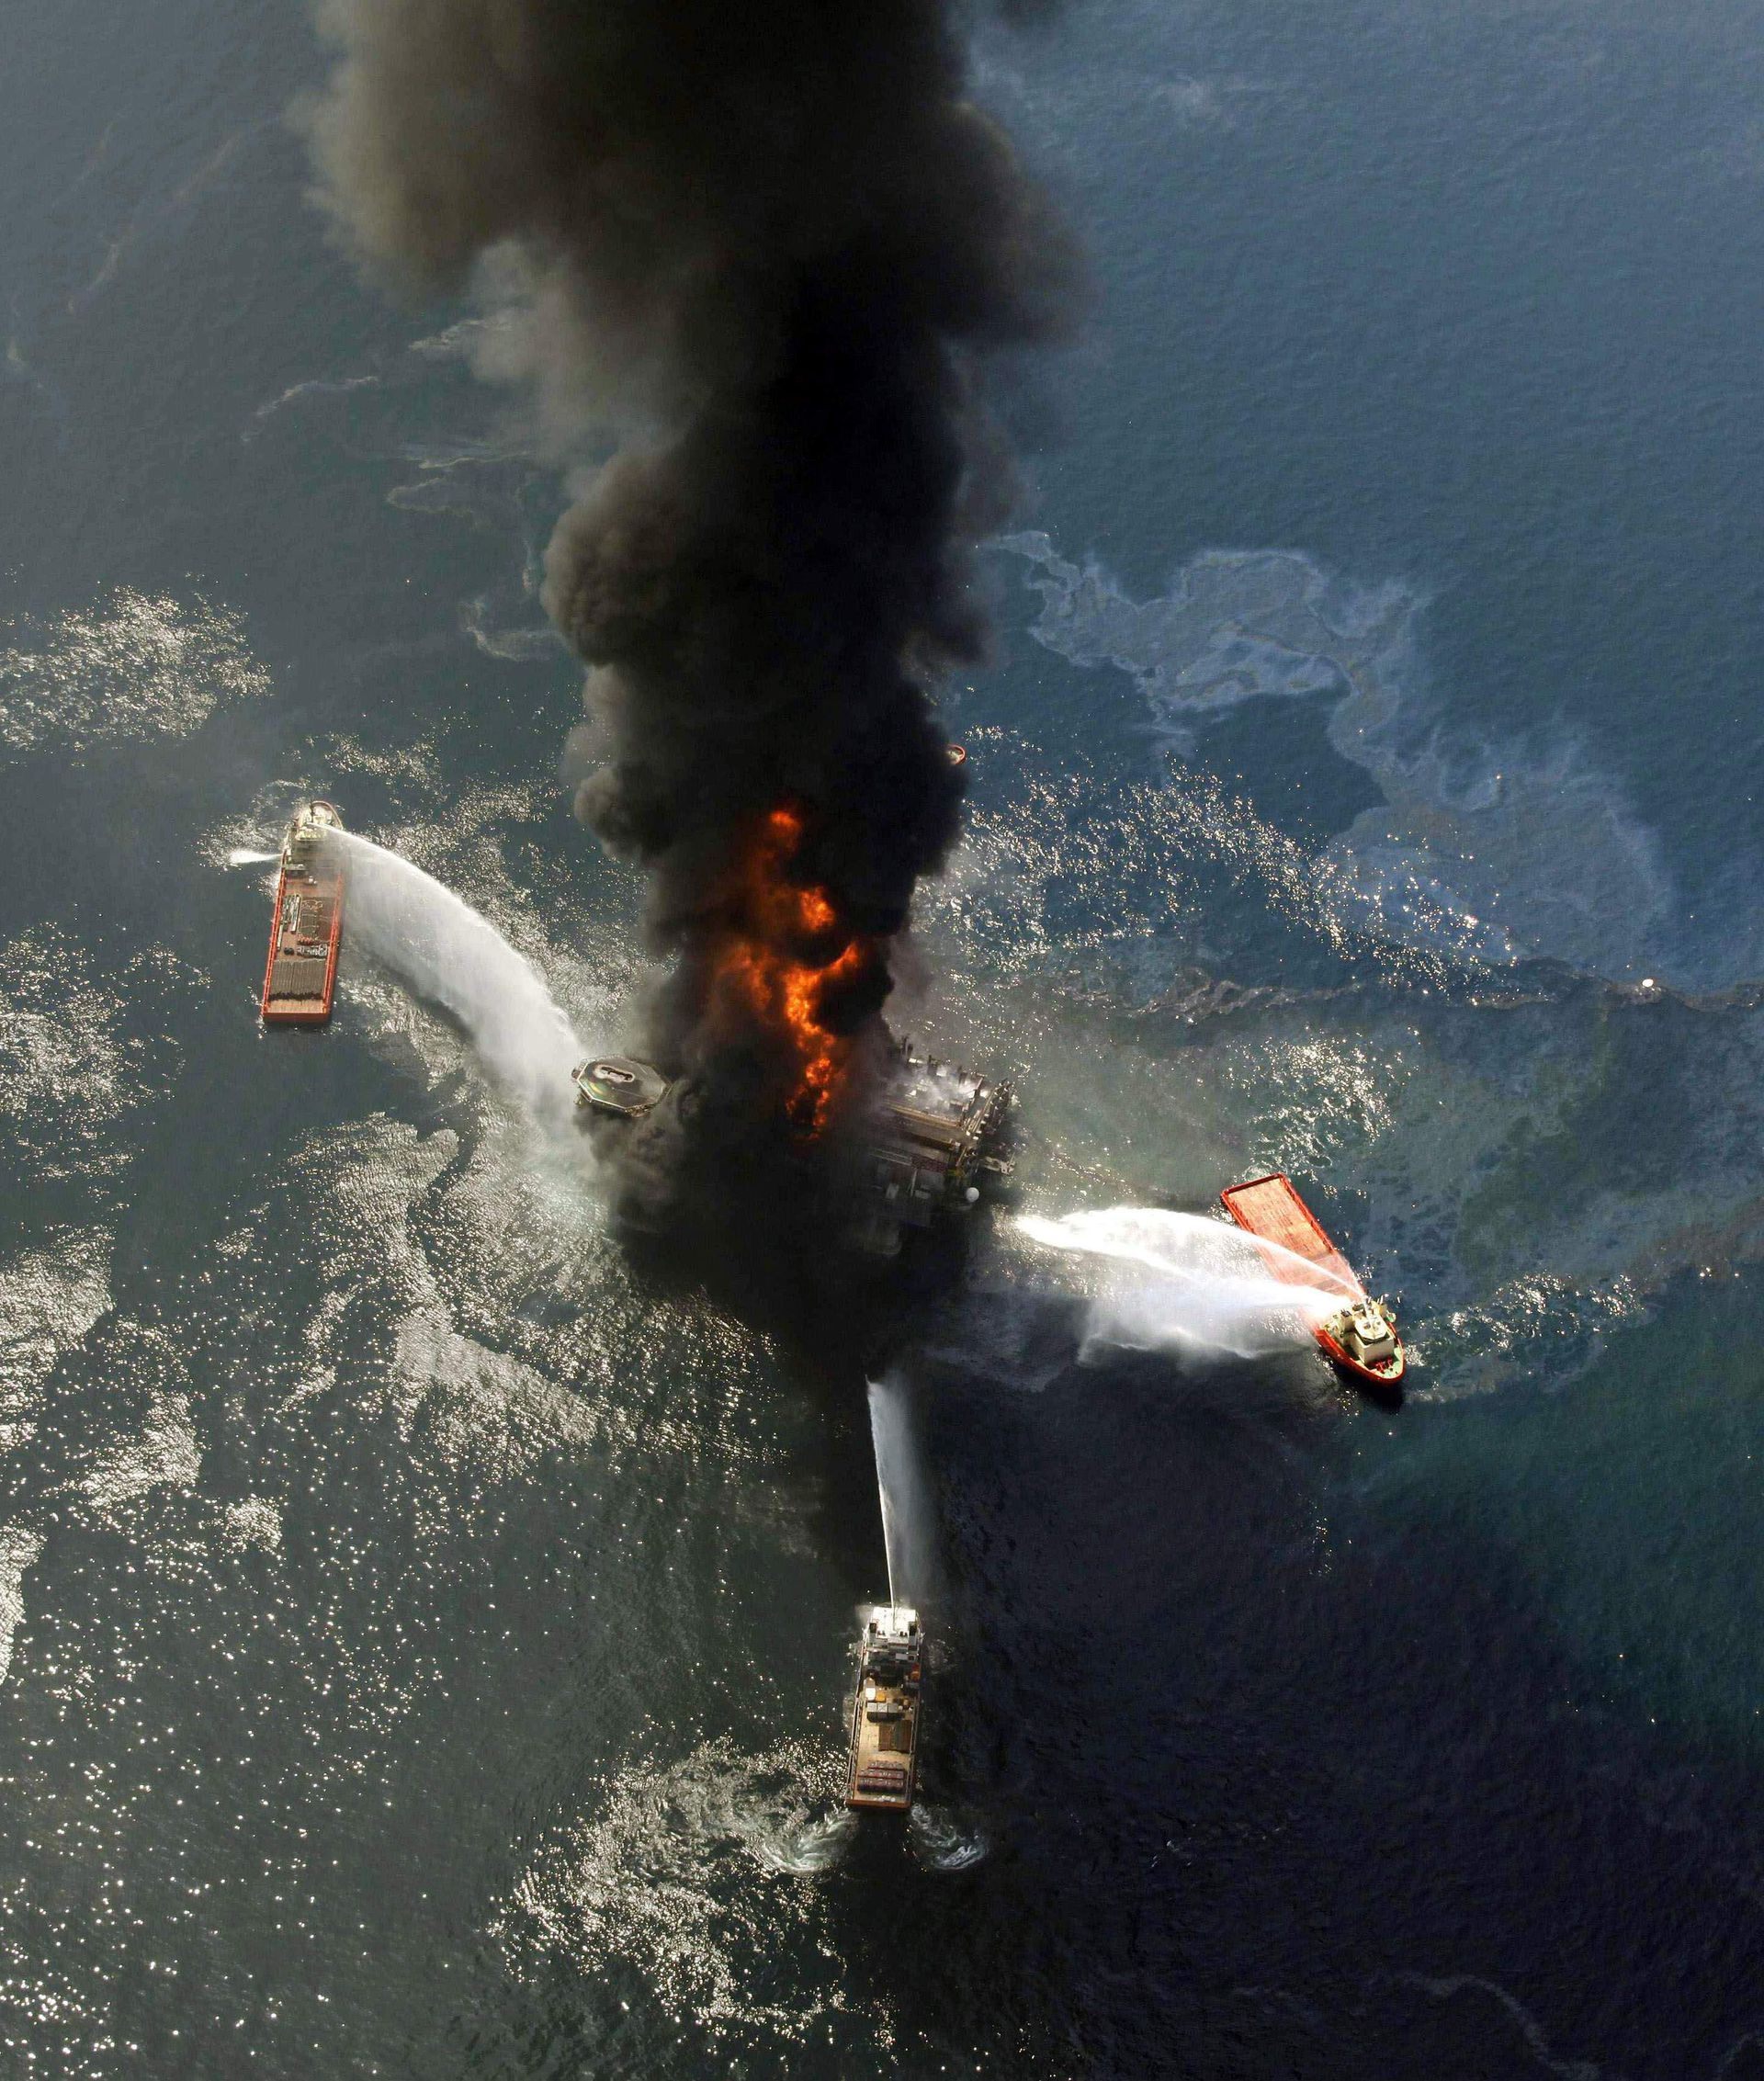 30 апреля 2010. Катастрофа в мексиканском заливе 2010. Deepwater Horizon катастрофа. Взрыв нефтяной платформы Deepwater Horizon 2010. British Petroleum разлив нефти.